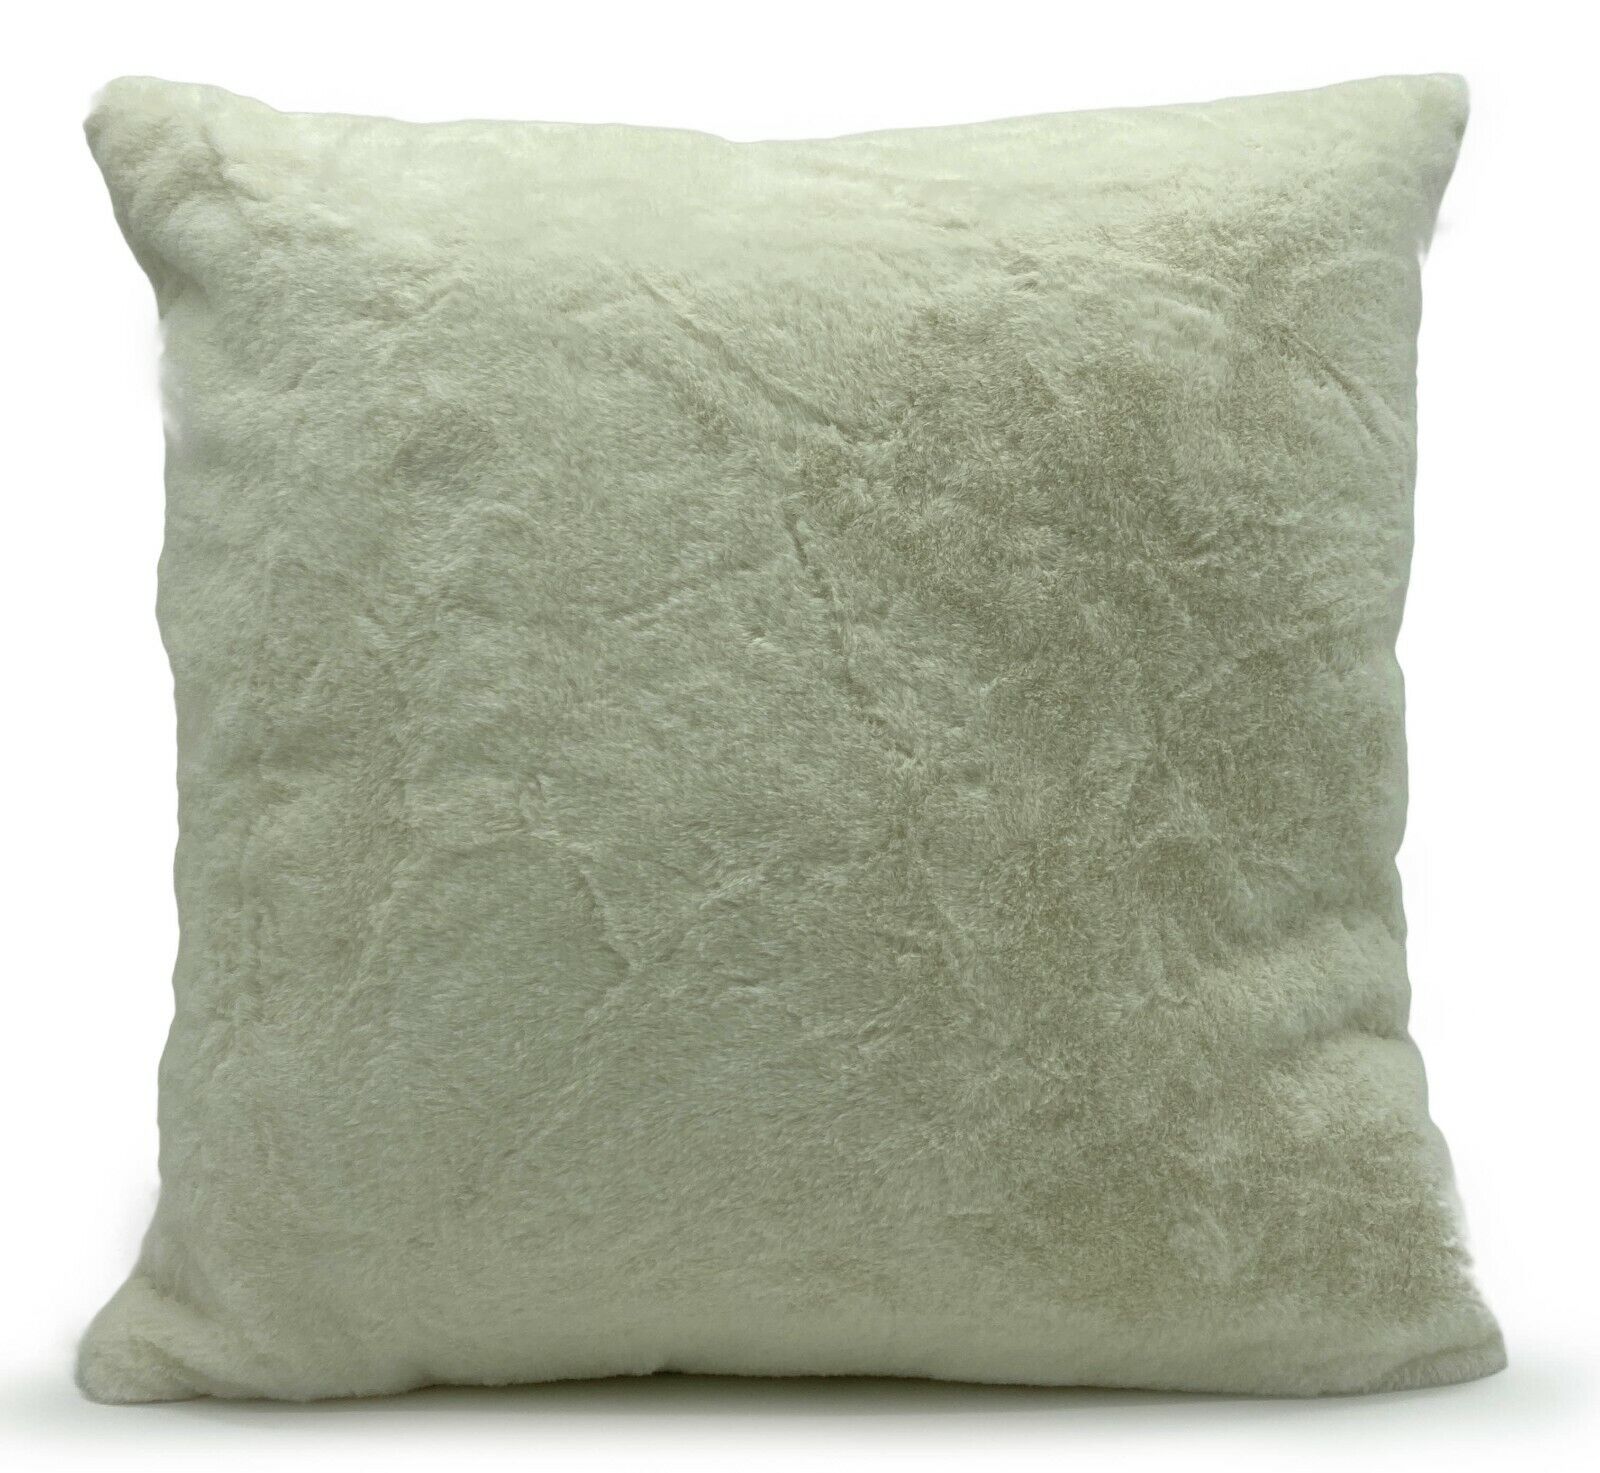 Faux fur cushion covers Cream